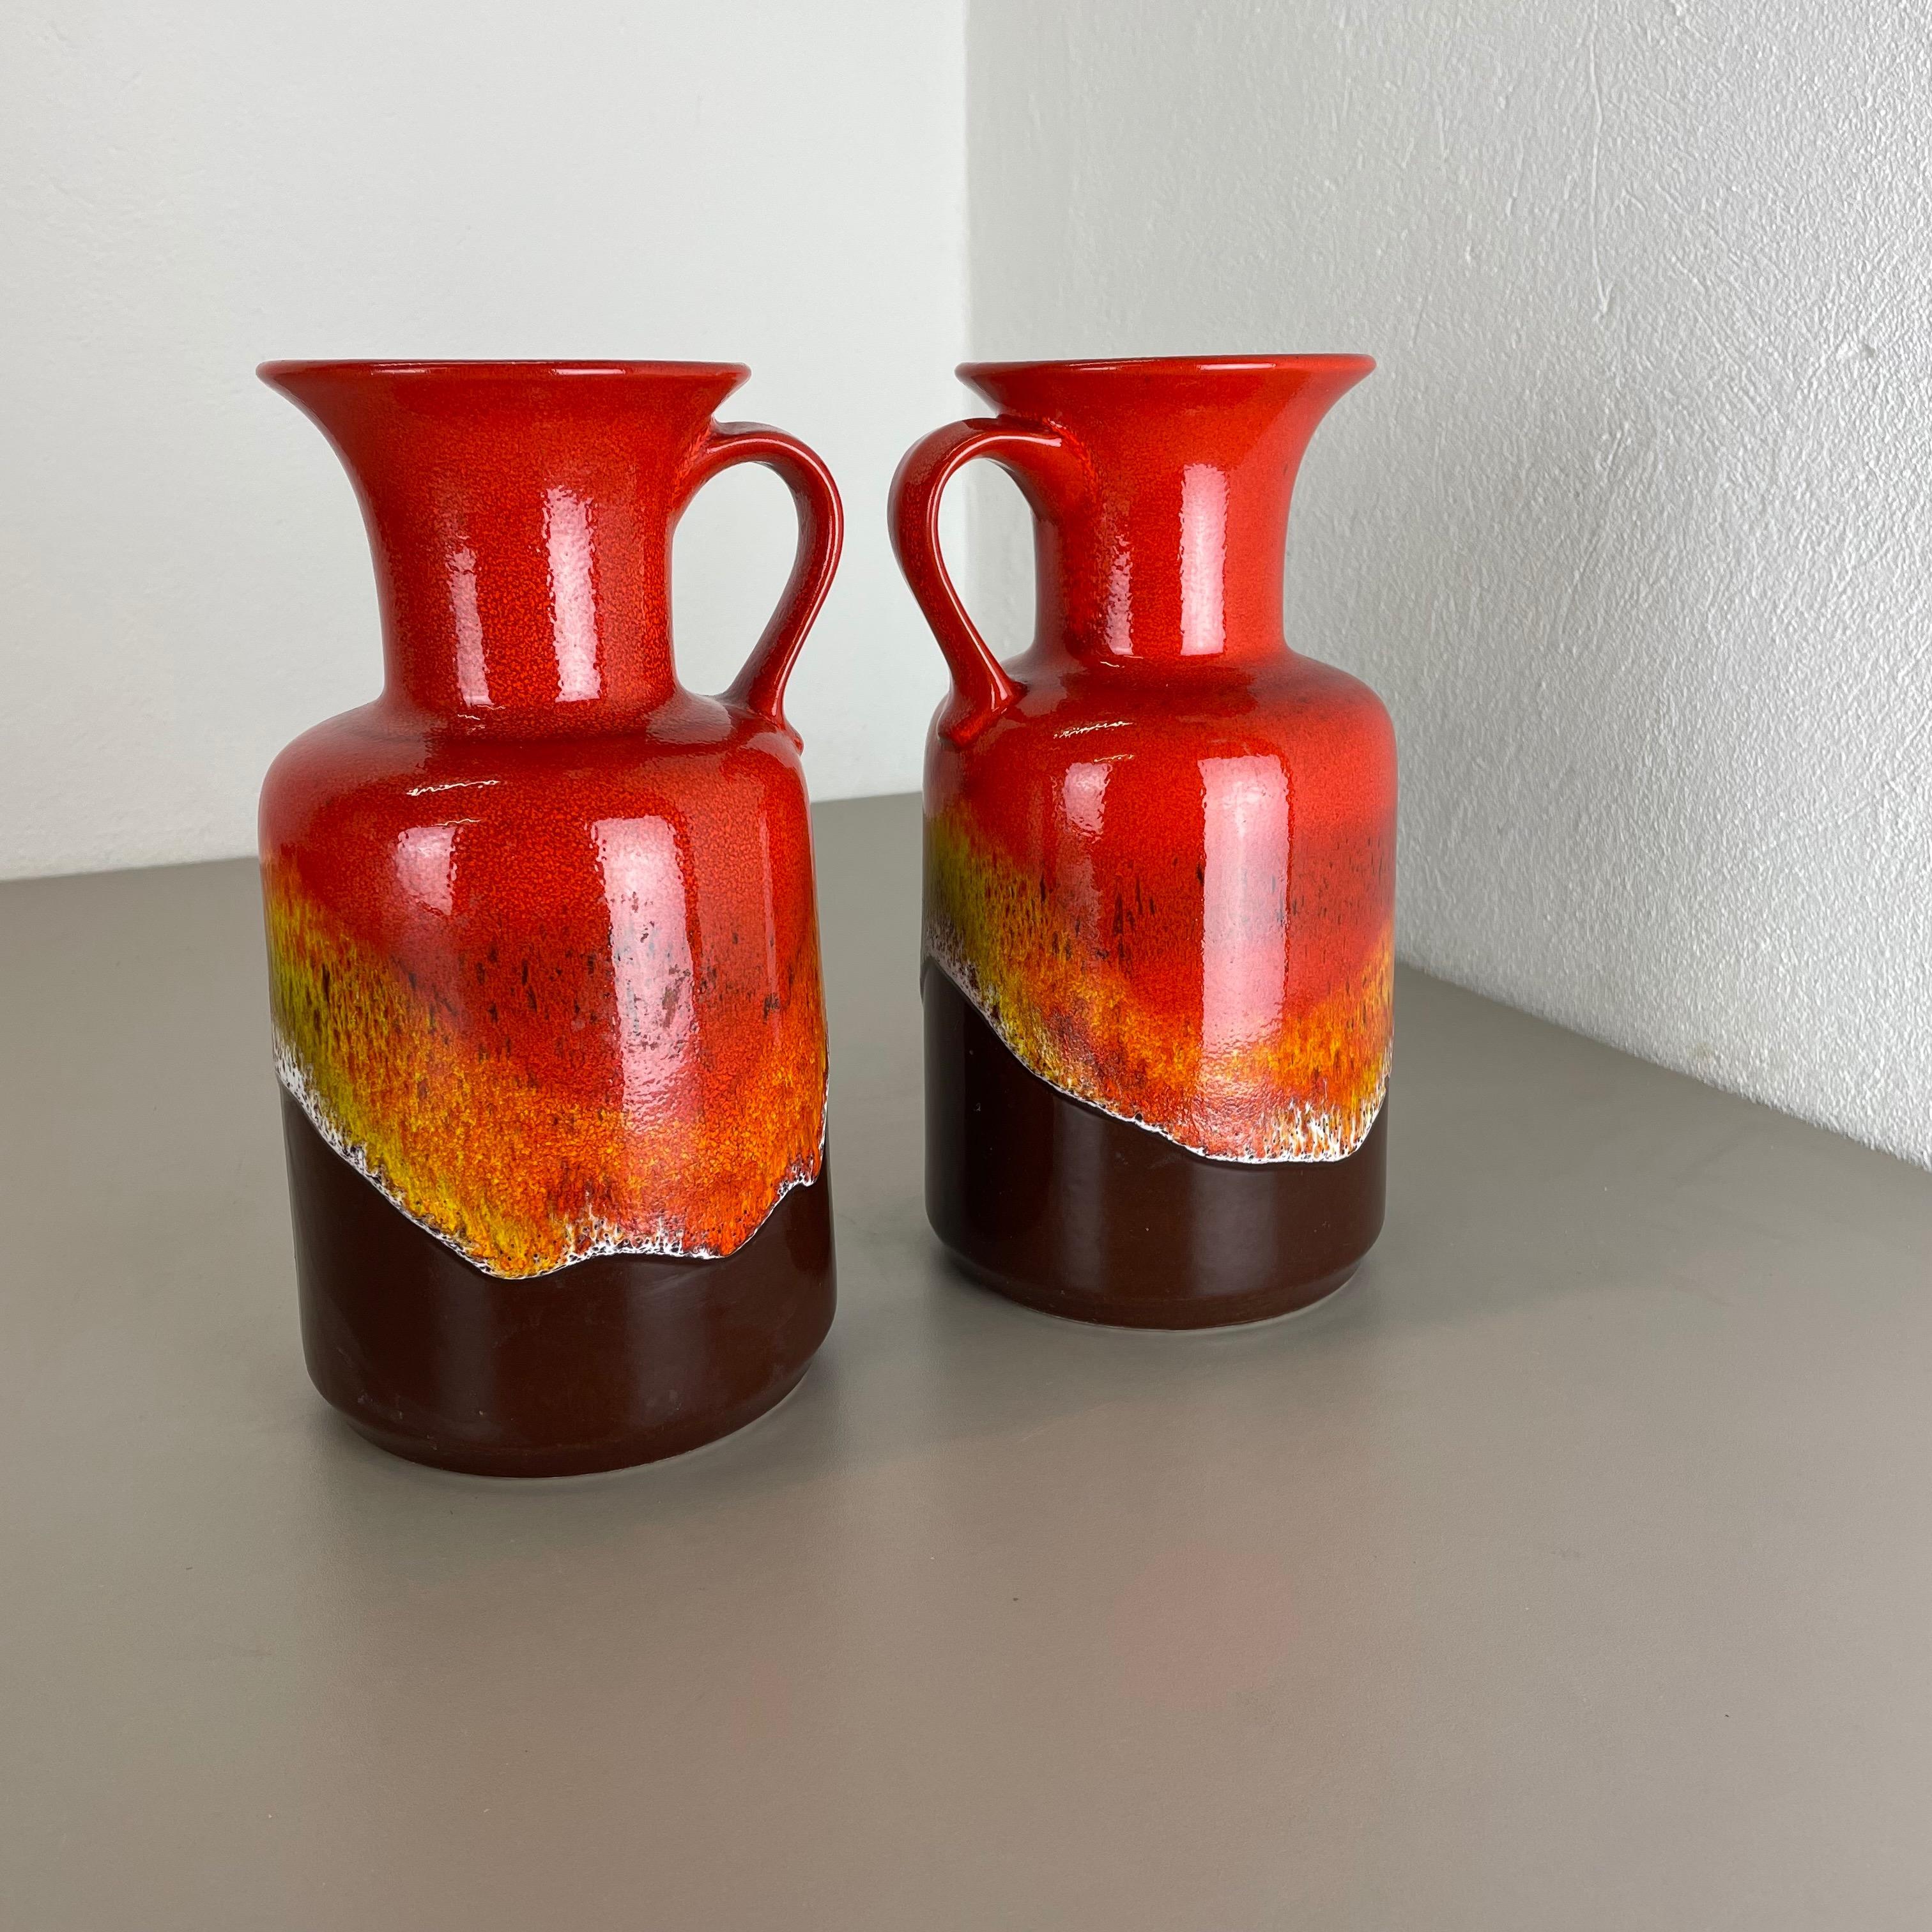 Article :

Ensemble de 2 vases en céramique


Producteur :

JASBA Ceramic, Allemagne


Décennie :

1970s



Description :

Ensemble de 2 vases originaux en céramique des années 1970, fabriqués en Allemagne. Production allemande de haute qualité avec